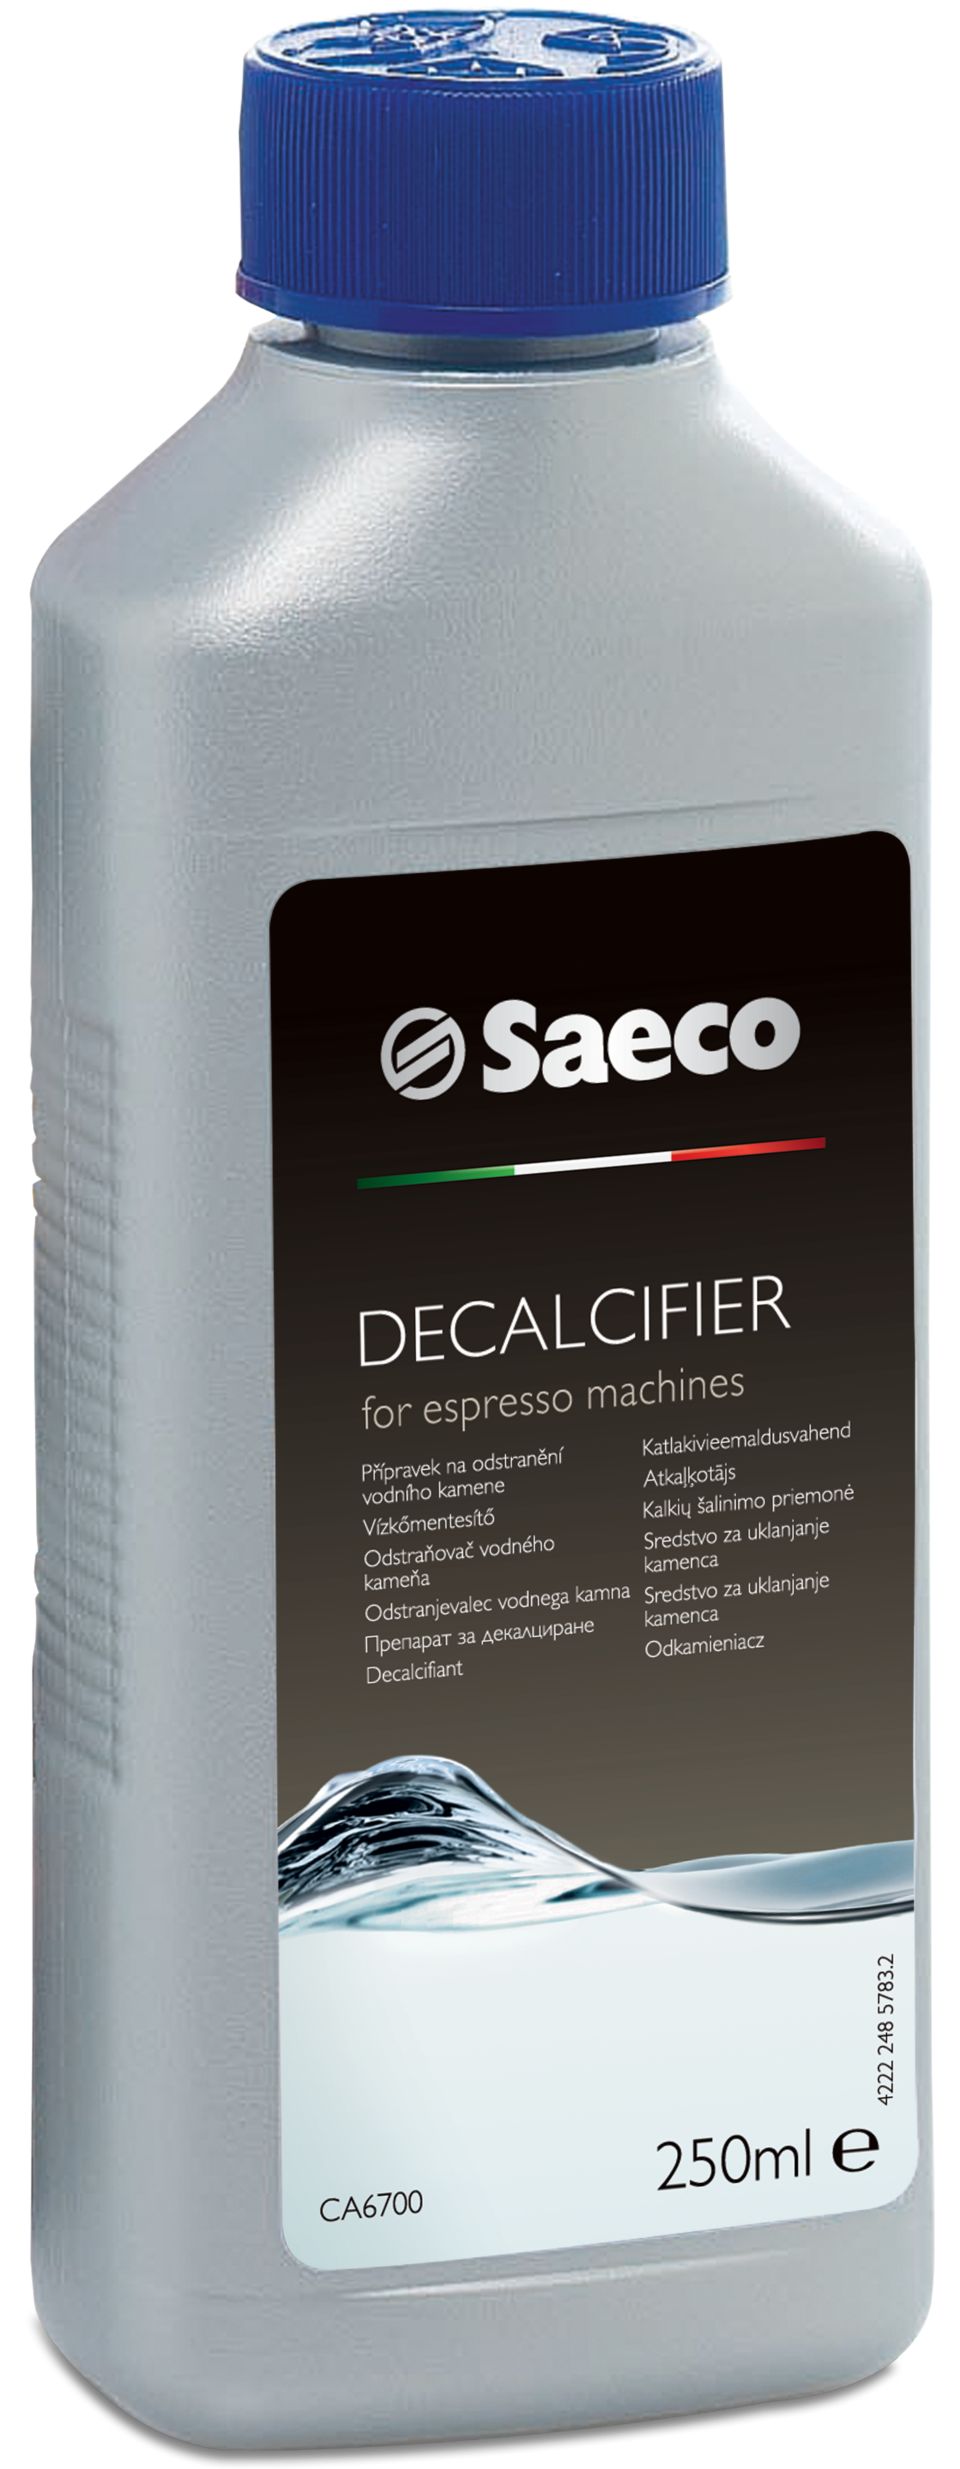 Saeco очистка от накипи. Средство Saeco от накипи Decalcifier. Saeco ca6700. Жидкость Philips Saeco для очистки от накипи ca6700/00 250 мл.. Средство для очистки от накипи Philips Saeco ca6700/10 для кофемашин.